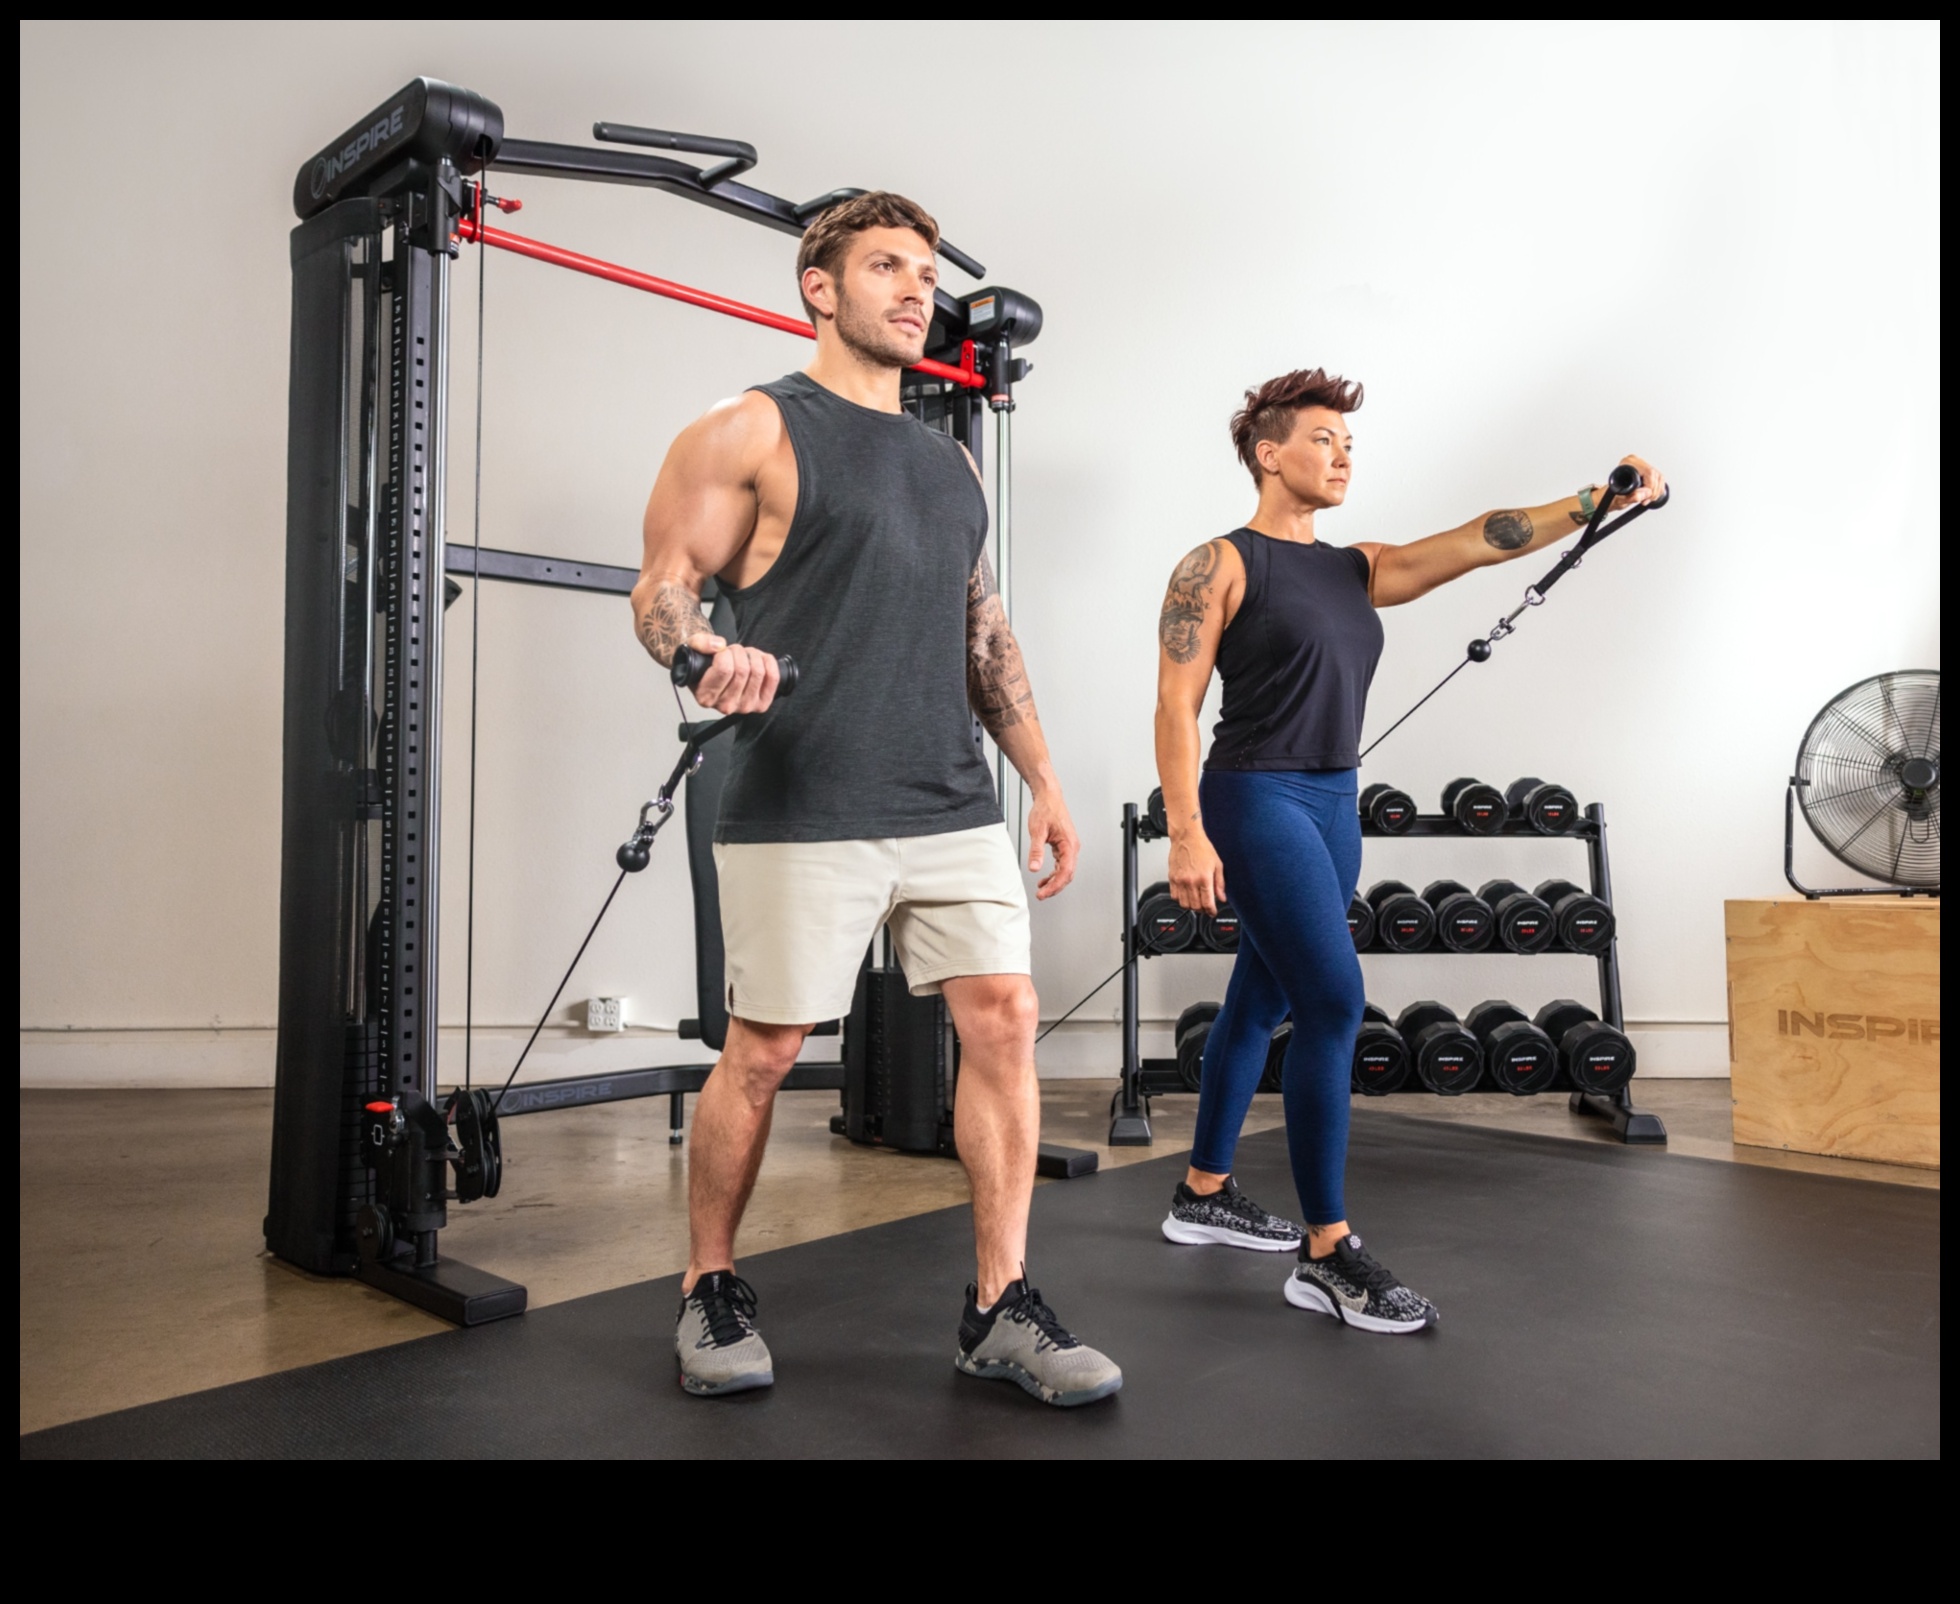 Dynamic Duo: Împerecherea echipamentelor de exerciții pentru un antrenament complet acasă